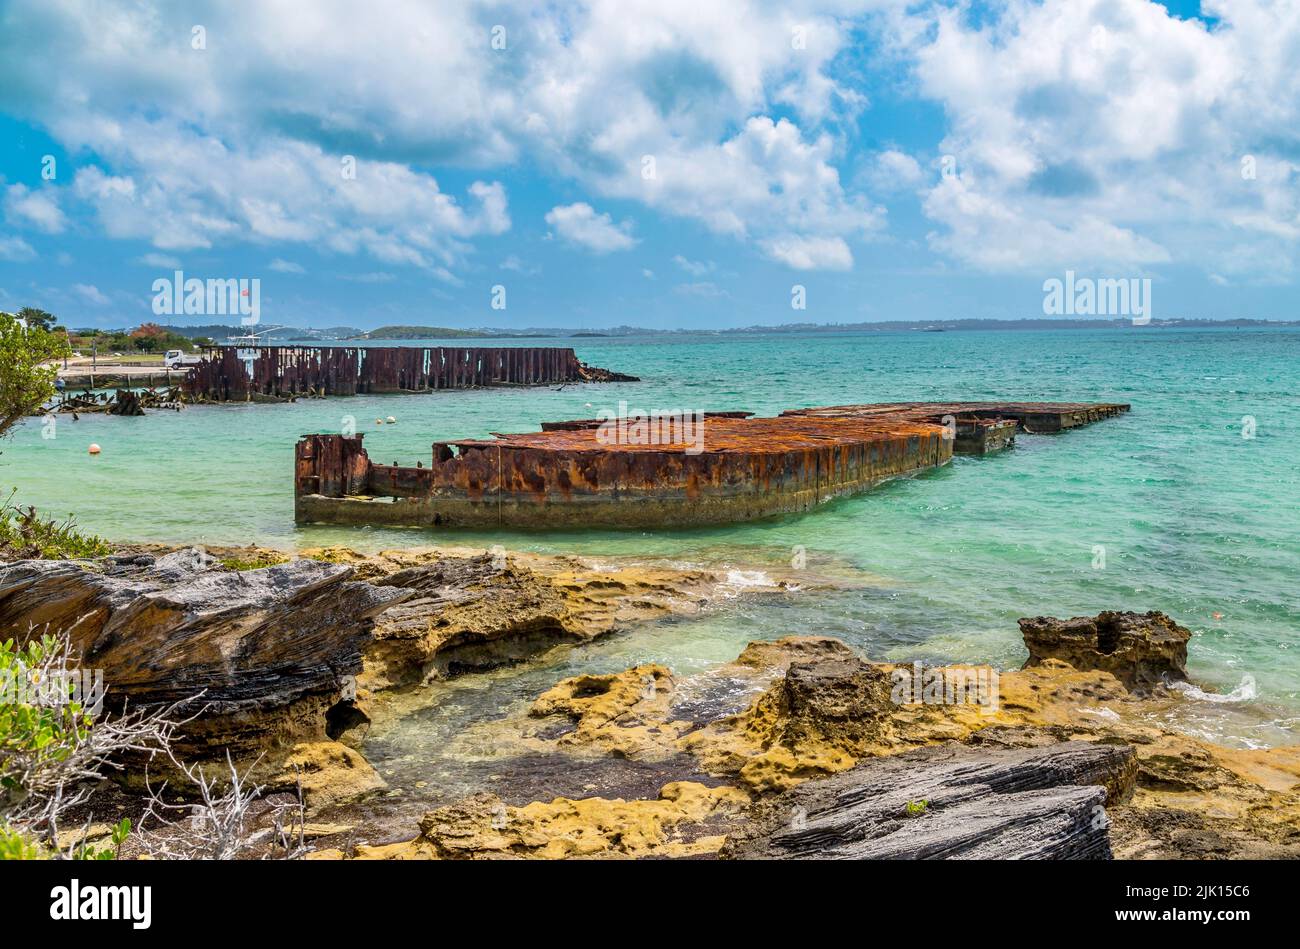 Le chantier flottant HM, construit sur la Tamise et remorqué aux Bermudes en 1869, Bermudes, Atlantique, Amérique centrale Banque D'Images